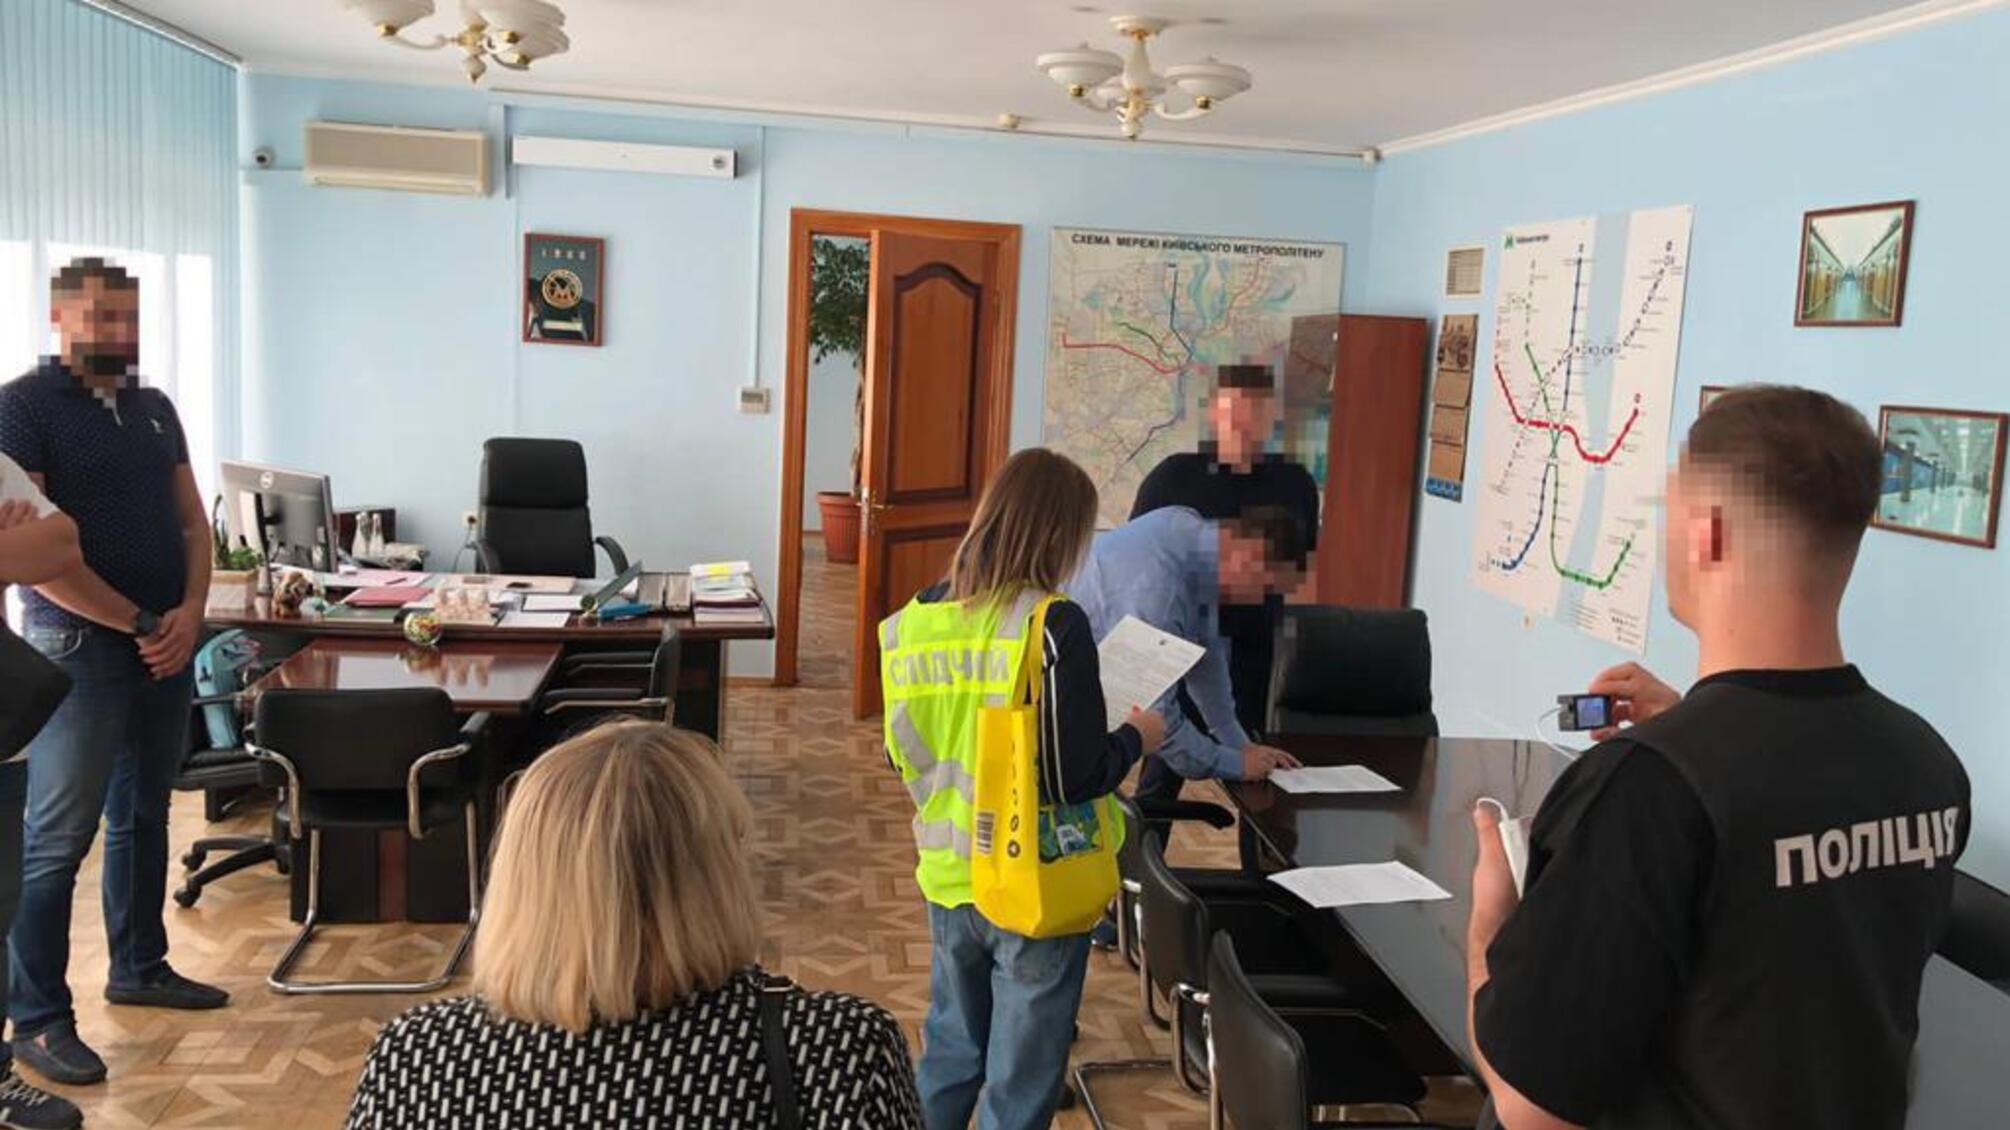 Растрата средств на строительстве метро: правоохранители провели обыски в офисах Киевметростроя